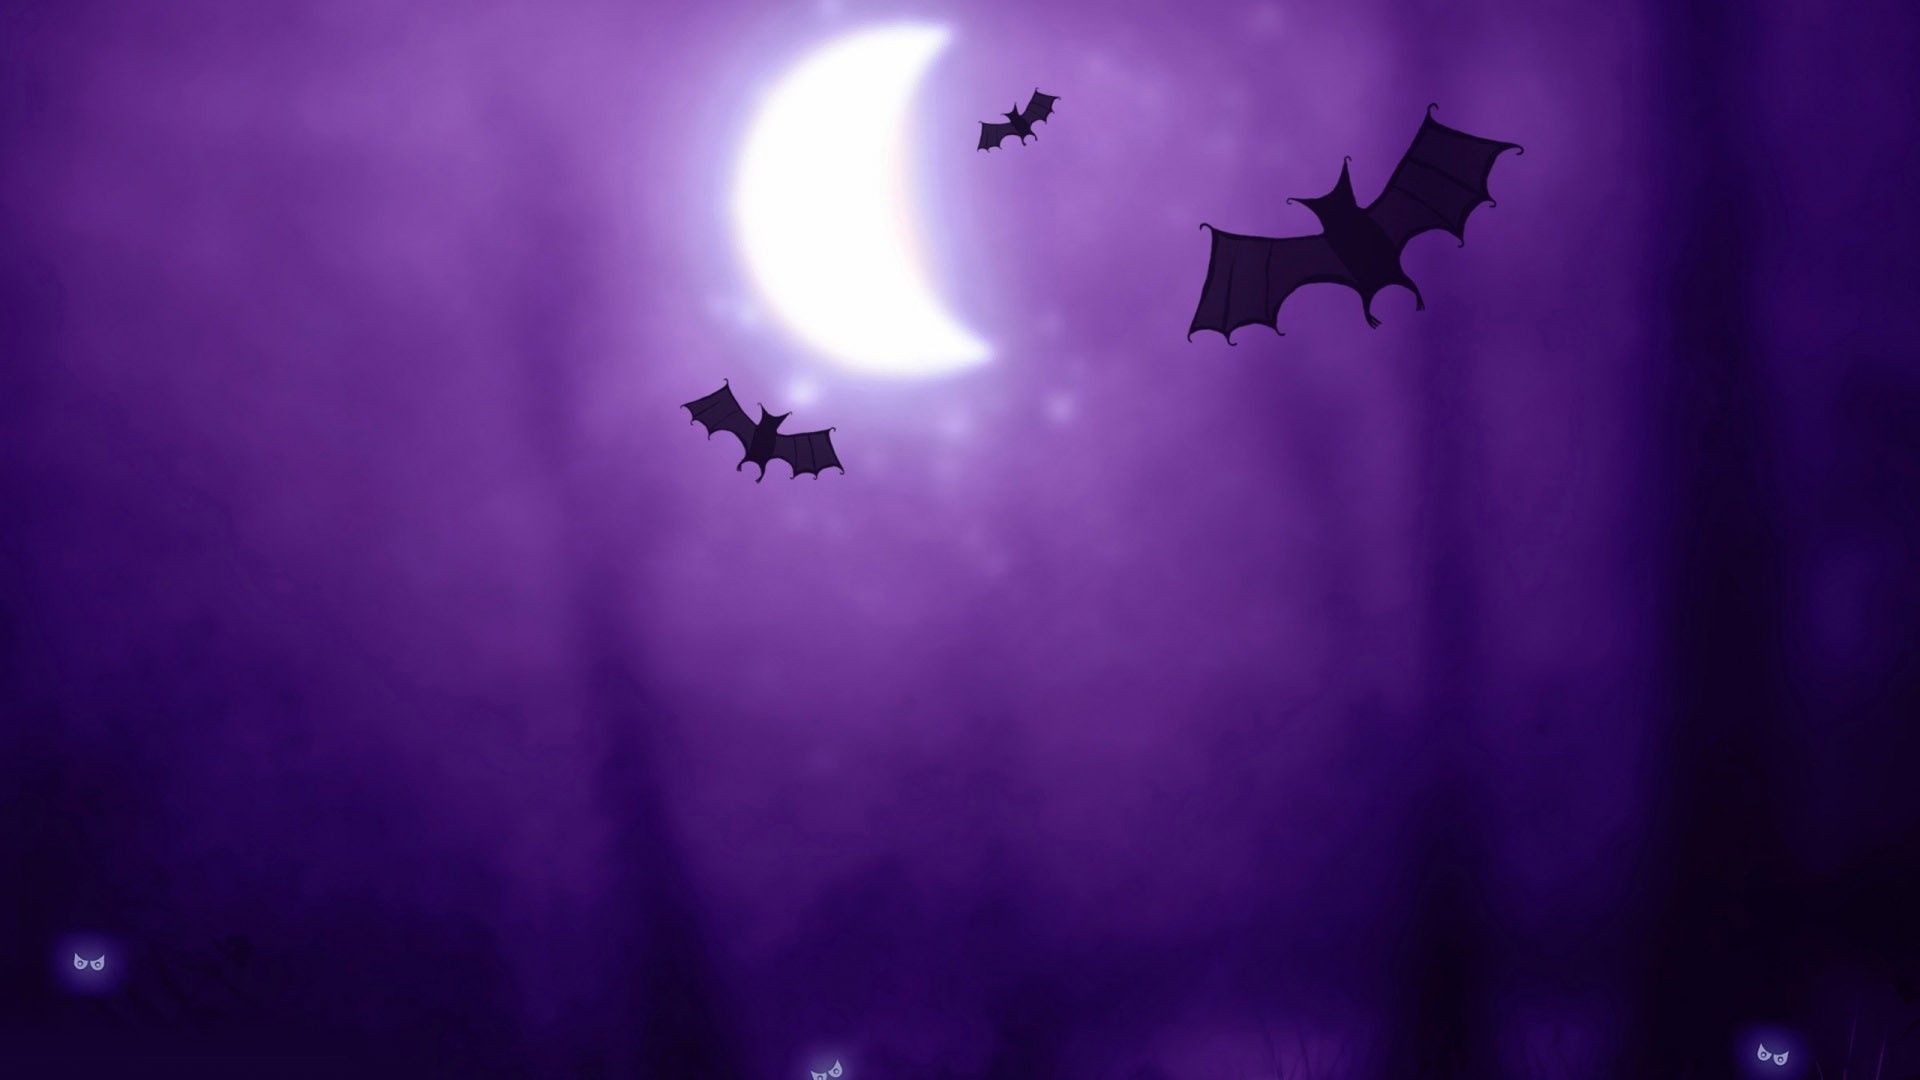 Bats in the purple night wallpaper - Free Wide HD Wallpaper